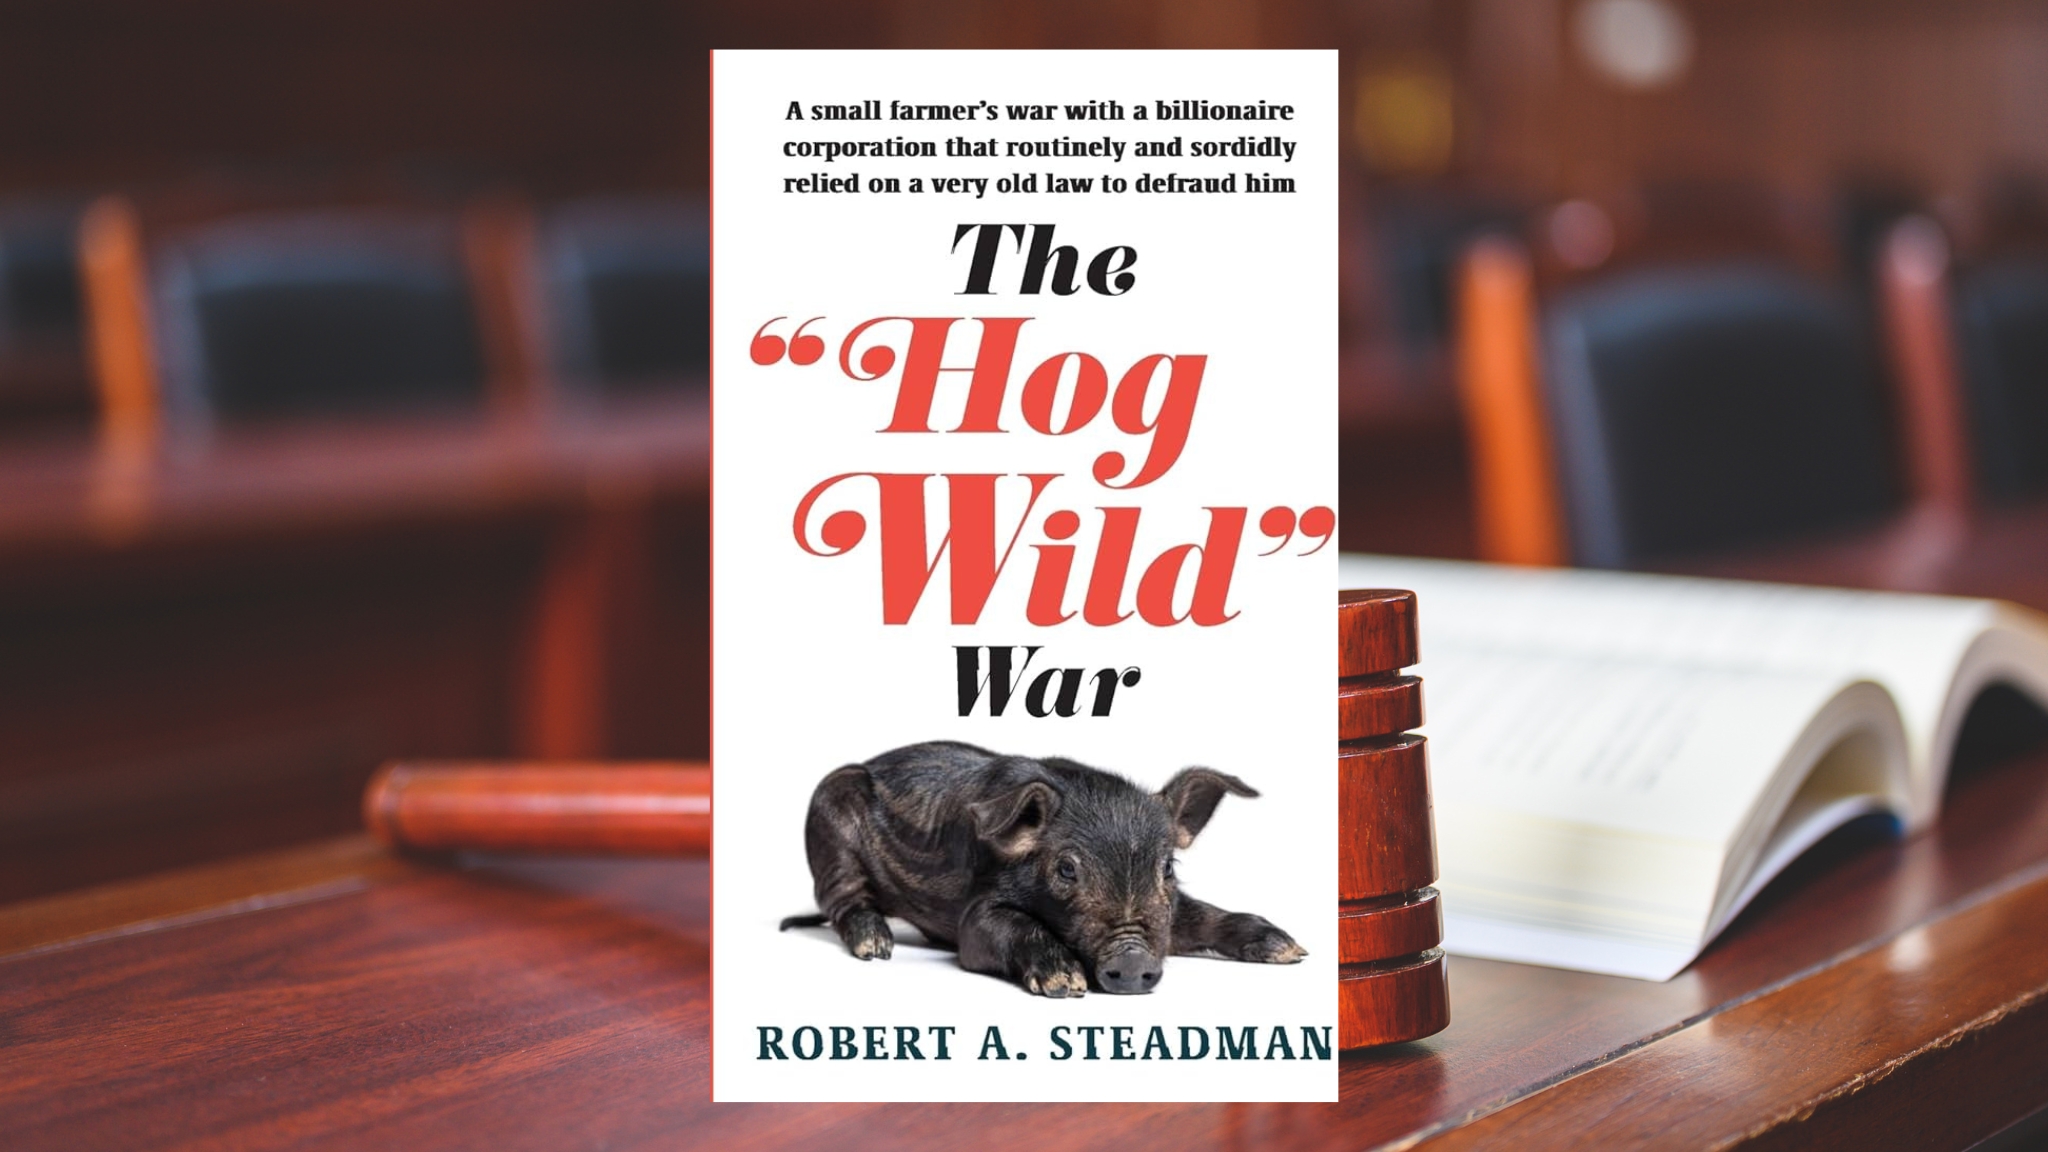 The Hog Wild War by Robert A Steadman